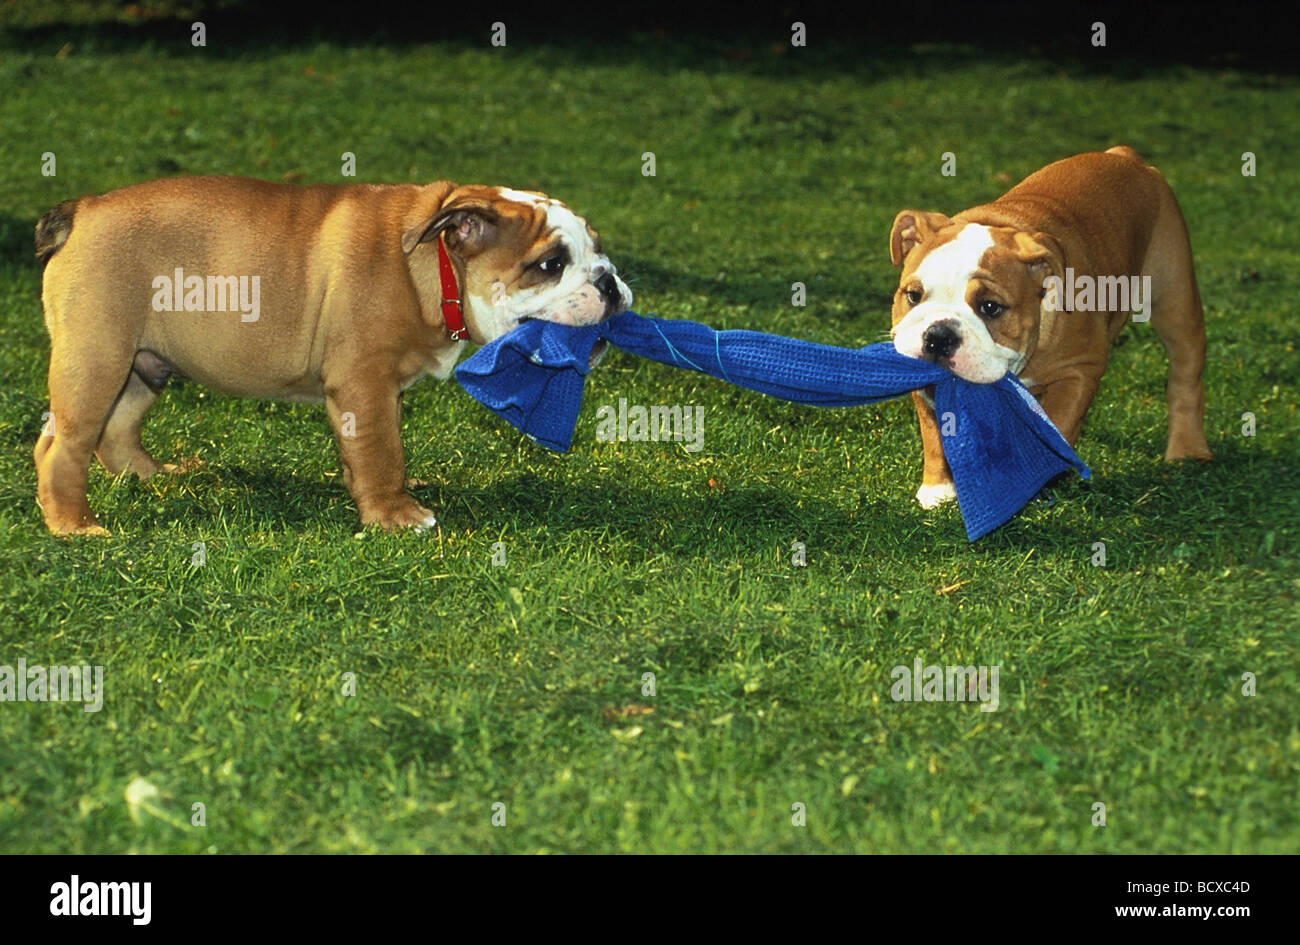 2 Englische Bulldoggen ziehen un einem Tuch Foto de stock